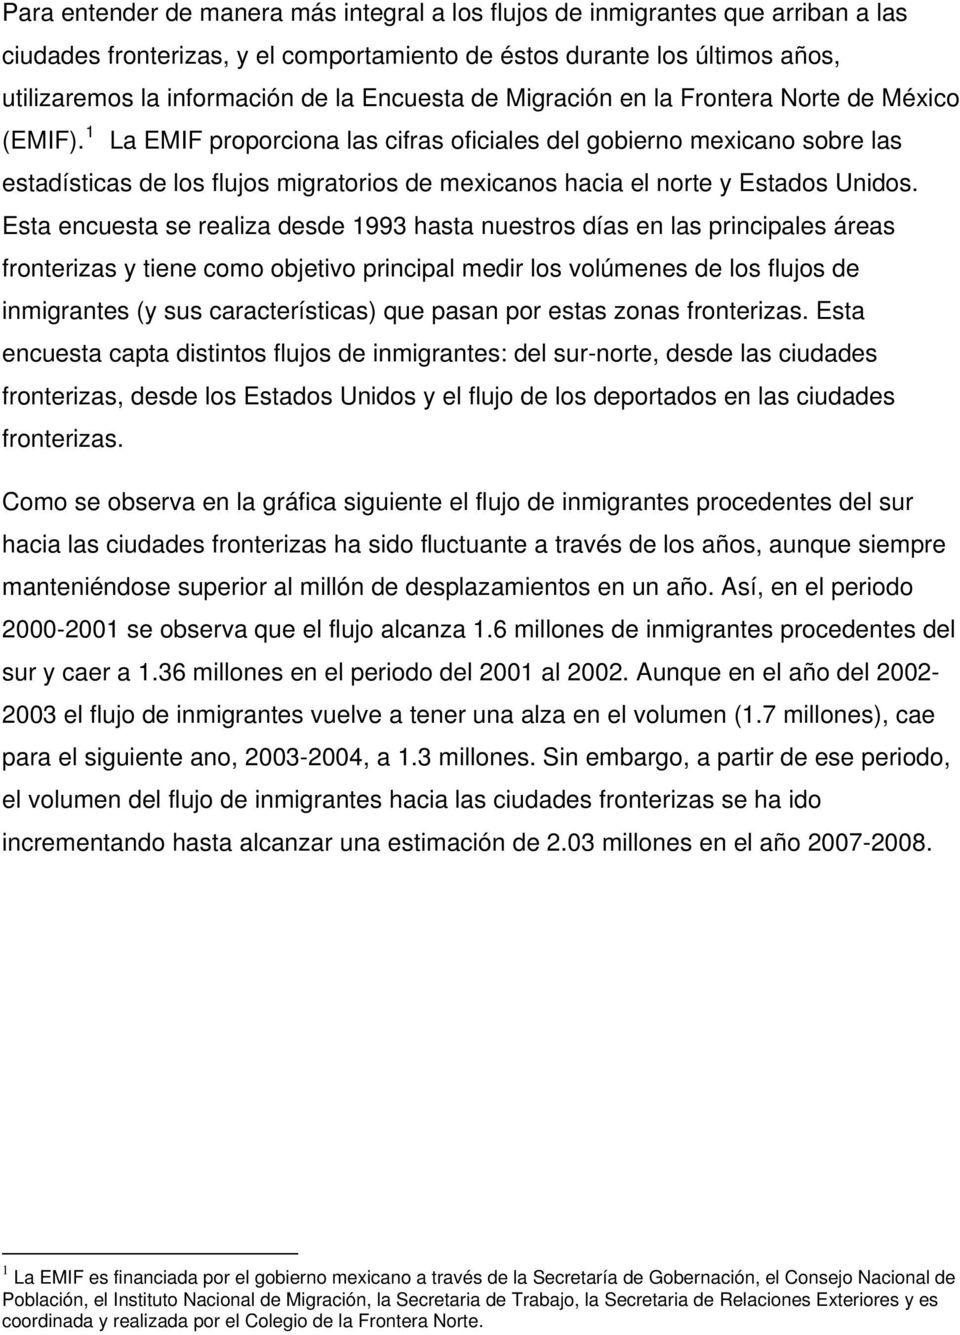 1 La EMIF proporciona las cifras oficiales del gobierno mexicano sobre las estadísticas de los flujos migratorios de mexicanos hacia el norte y Estados Unidos.